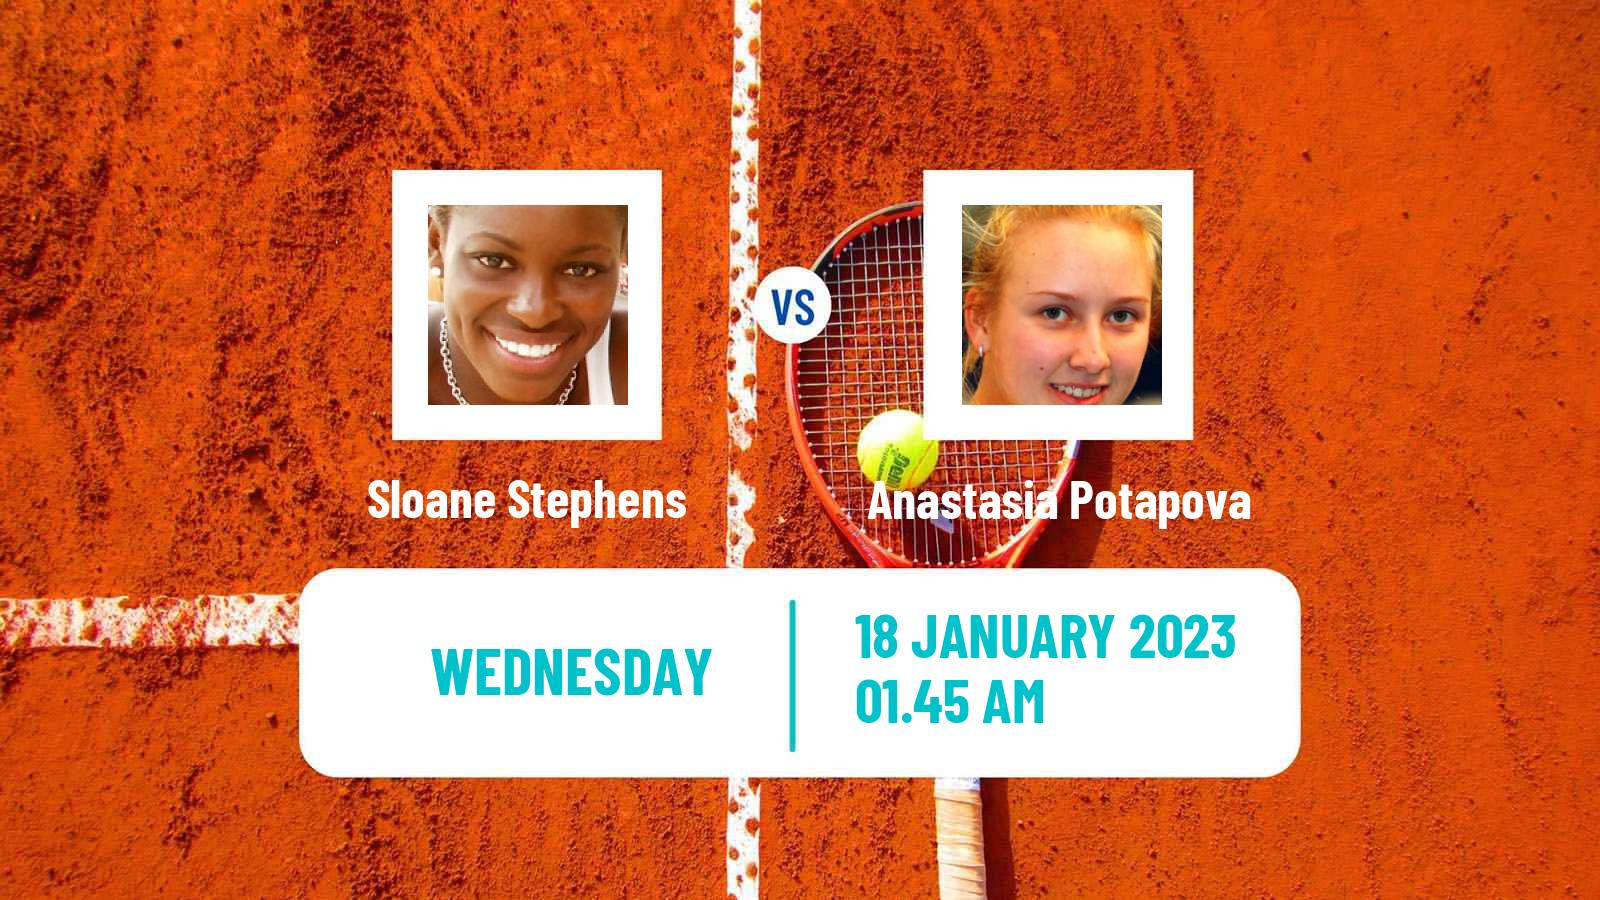 Tennis WTA Australian Open Sloane Stephens - Anastasia Potapova